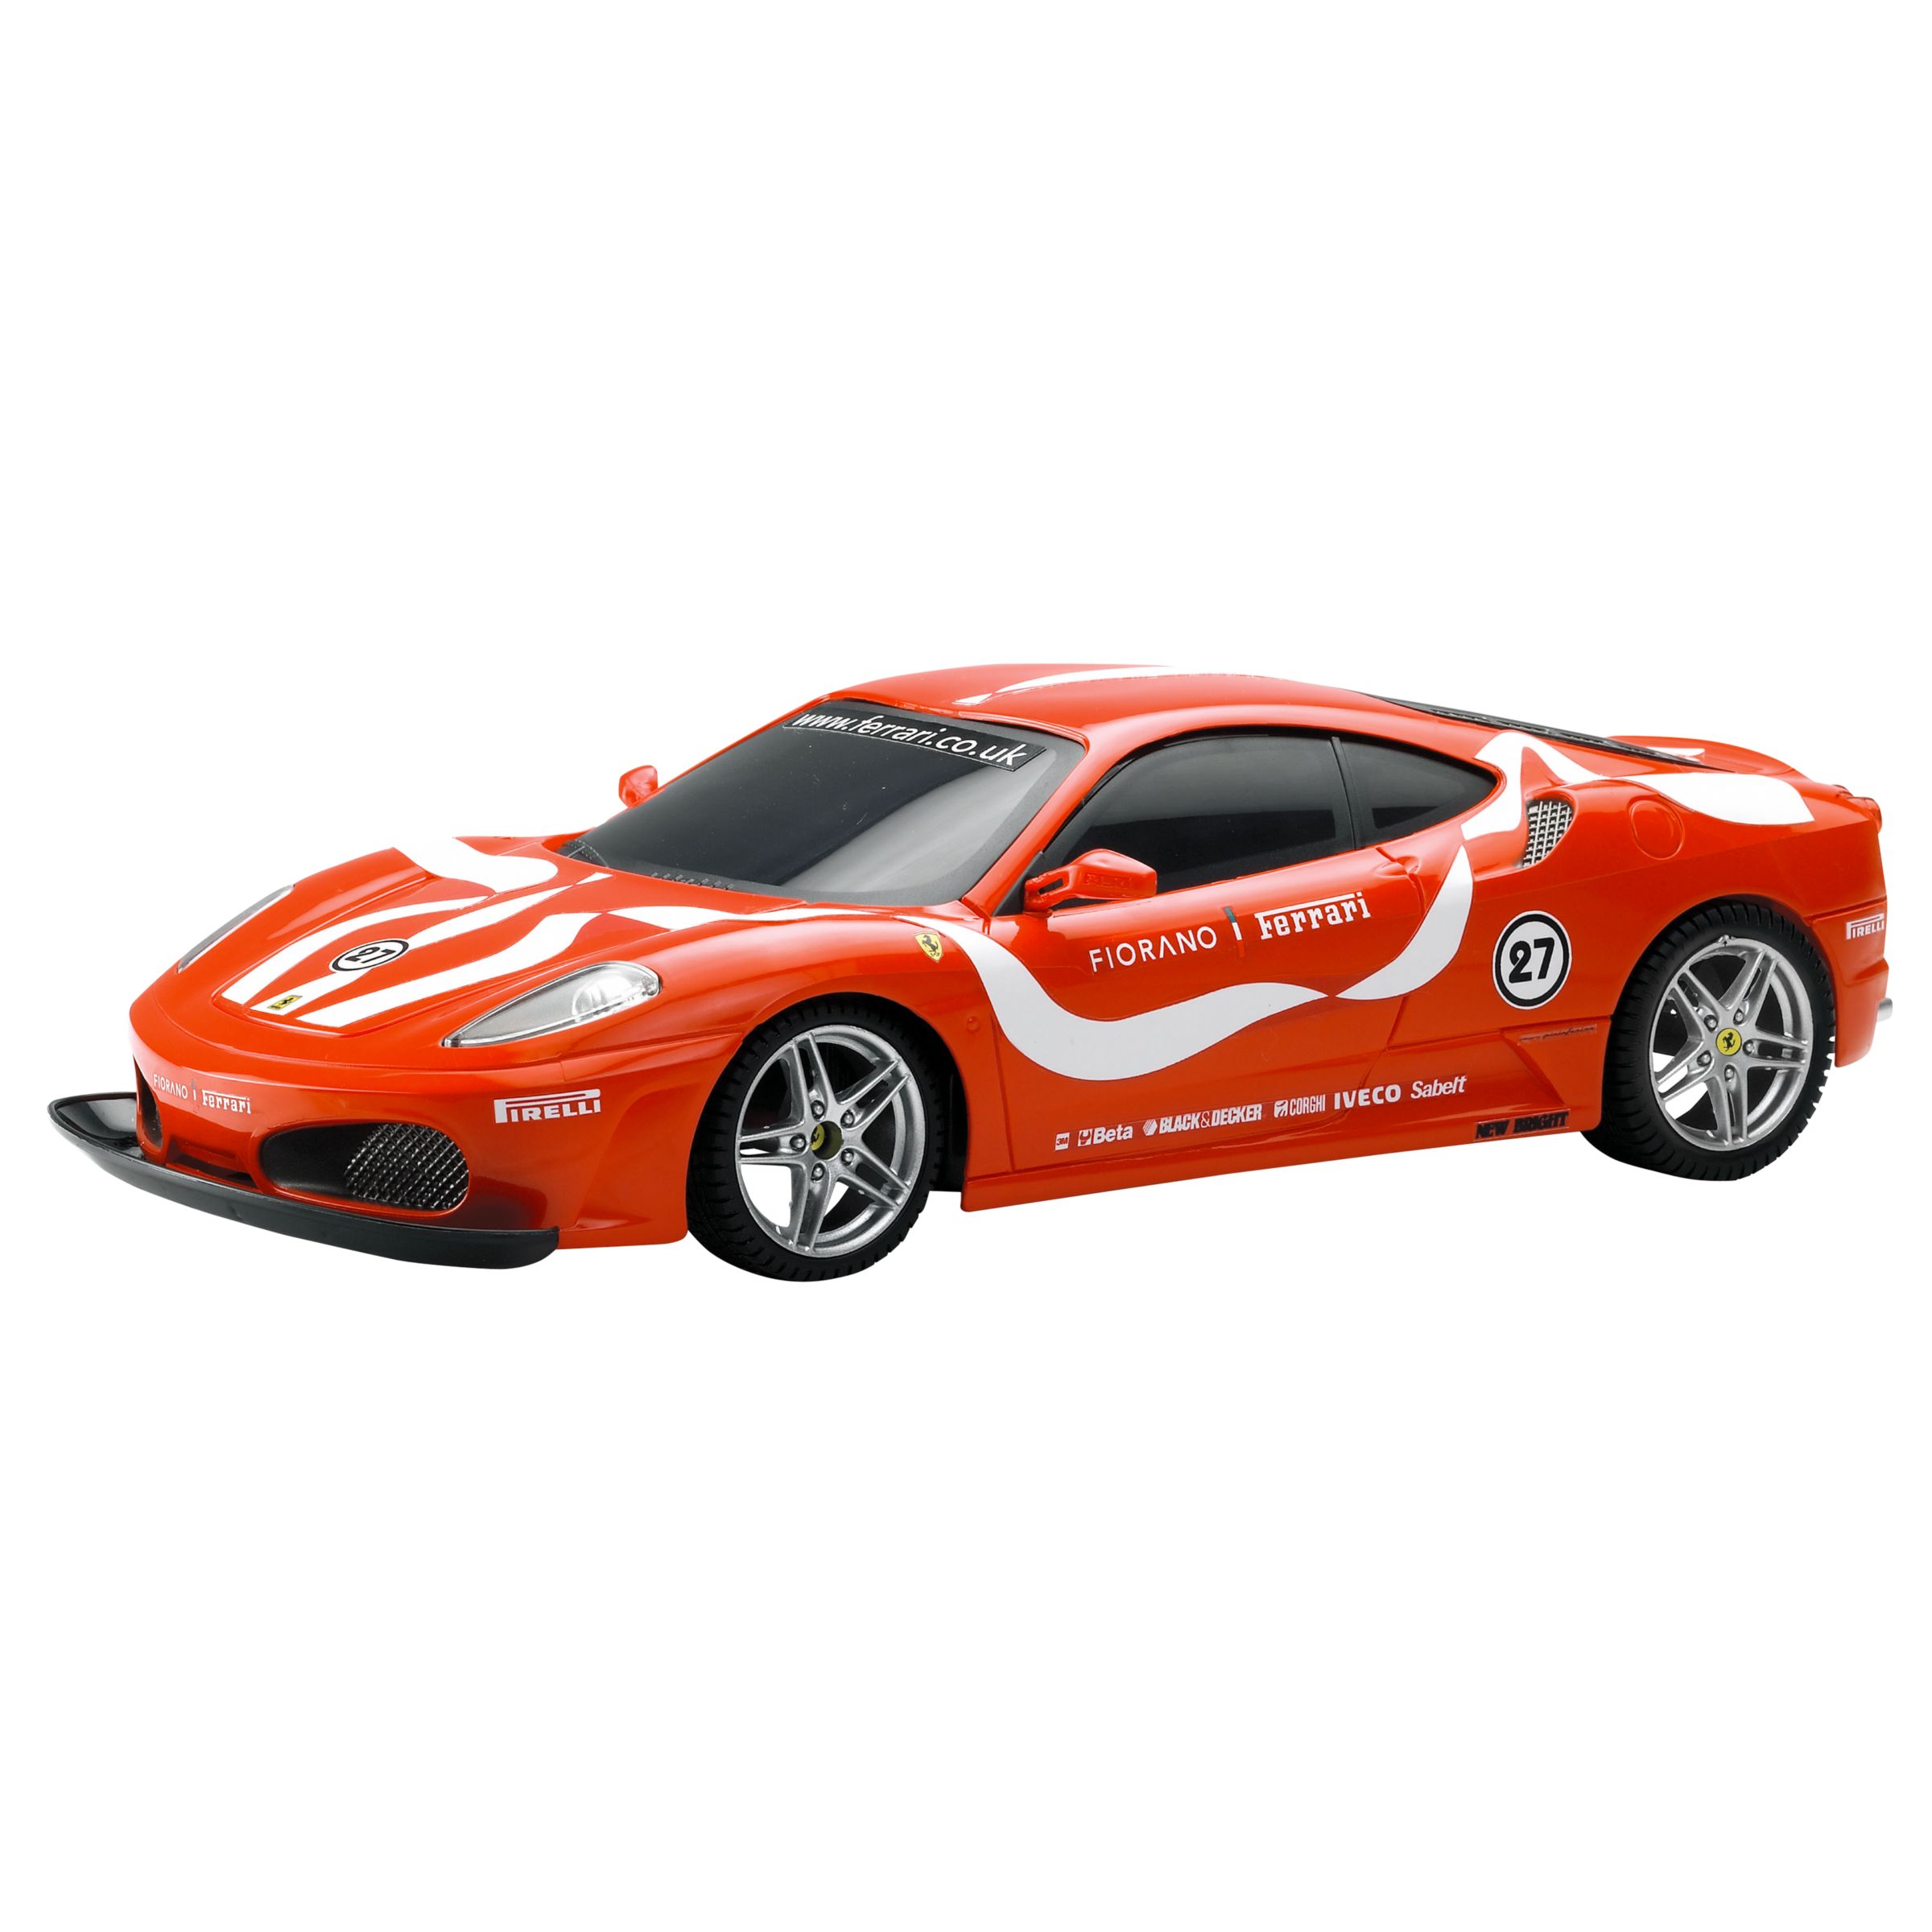 New Bright - 1:16 Scale Ferrari Fiorano(Red)